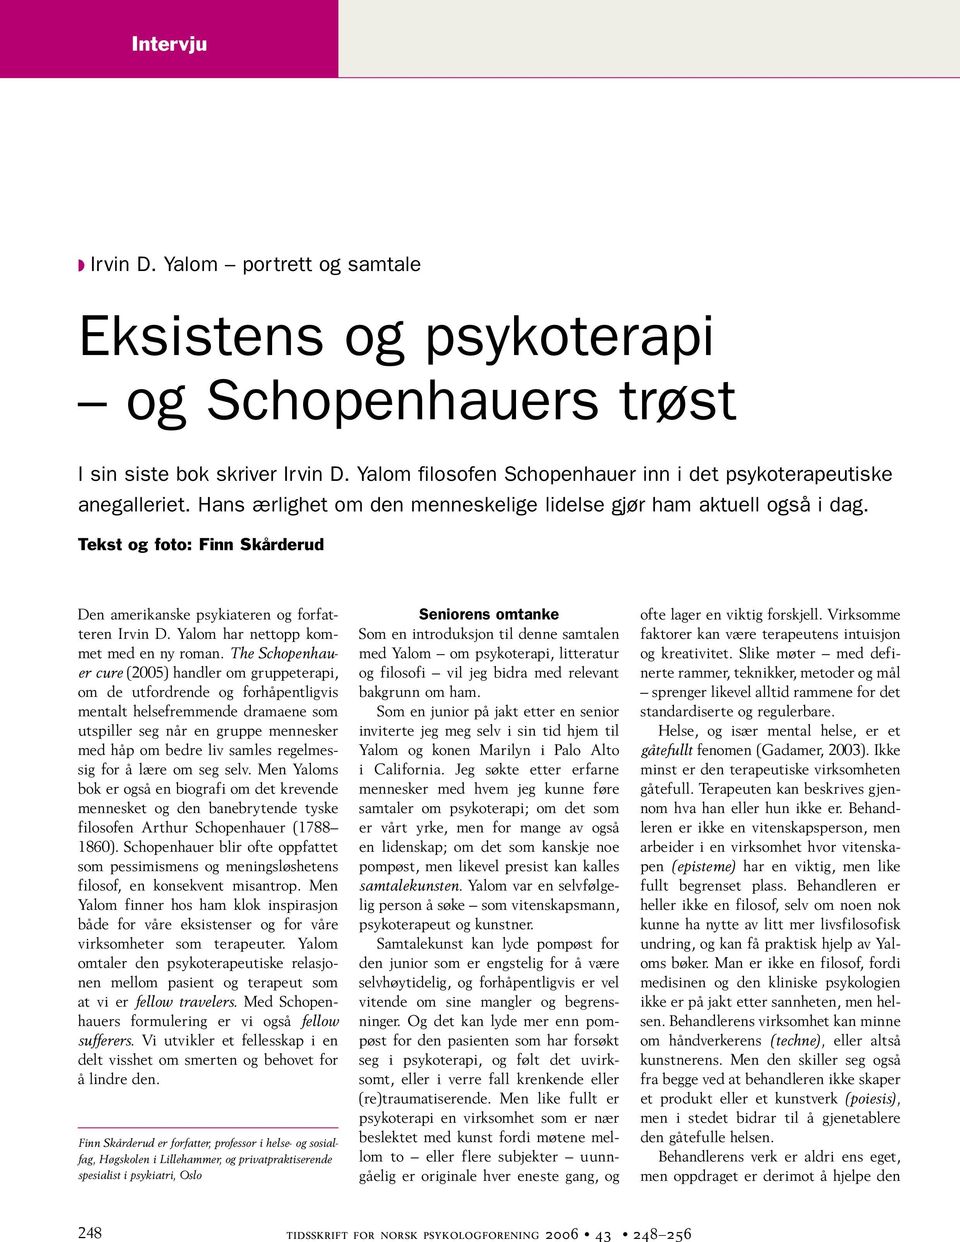 The Schopenhauer cure (2005) handler om gruppeterapi, om de utfordrende og forhåpentligvis mentalt helsefremmende dramaene som utspiller seg når en gruppe mennesker med håp om bedre liv samles